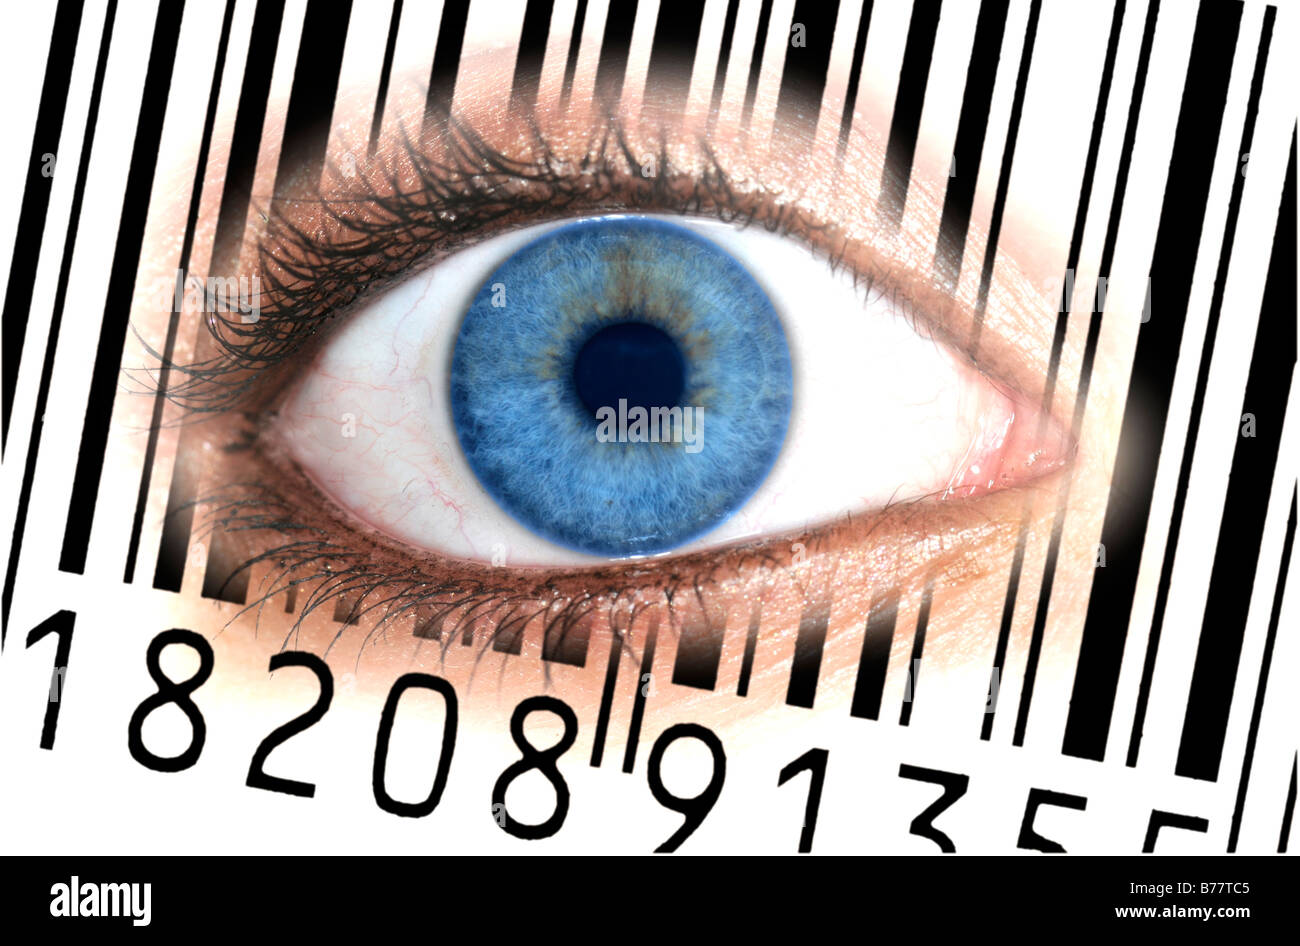 Nahaufnahme eines Auges mit dem EAN-Barcode, europäische Artikelnummer auf einer Iris, symbolisches Bild für gläserne Kunde Stockfoto